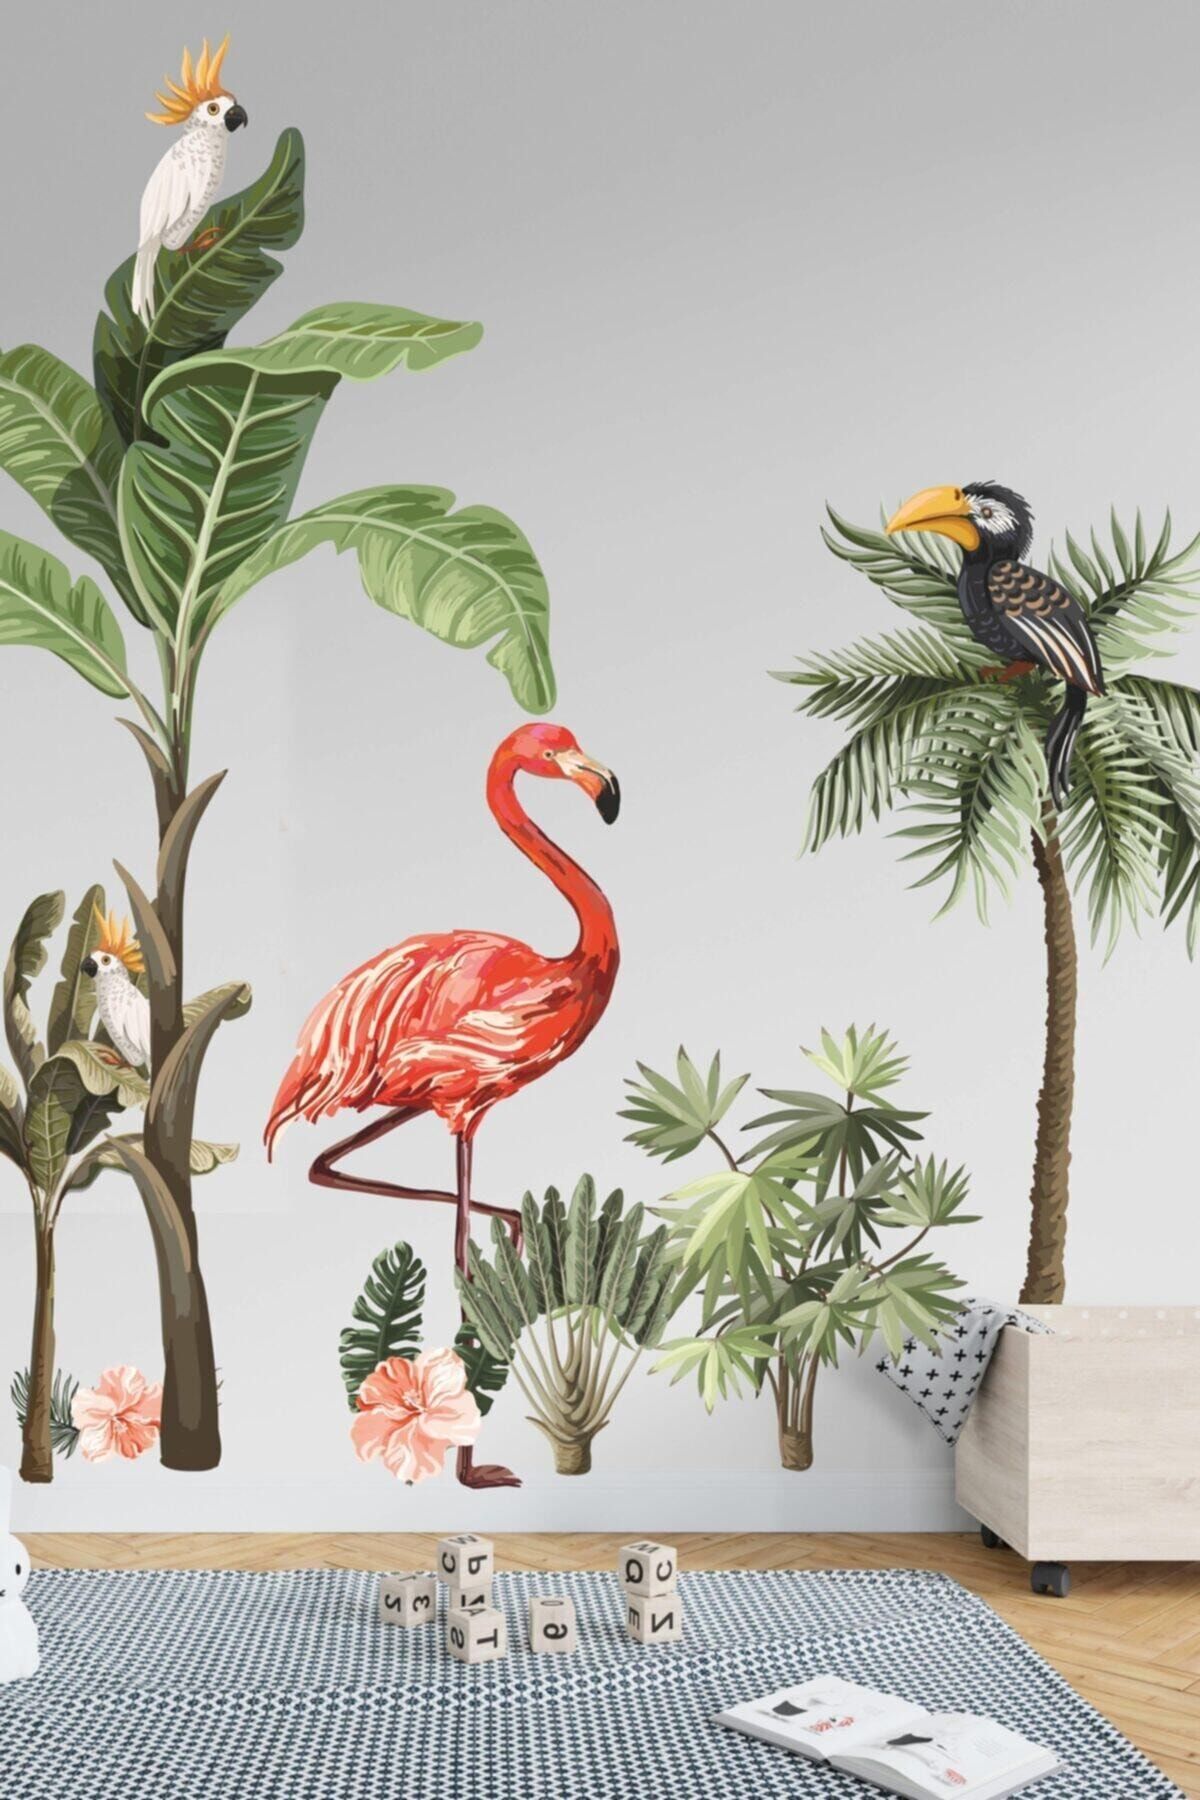 Walldeco Flamingo Ve Kuşlar Safari Tropikal Hayvanlar Ve Ağaçlar Çocuk Bebek Odası Duvar Sticker